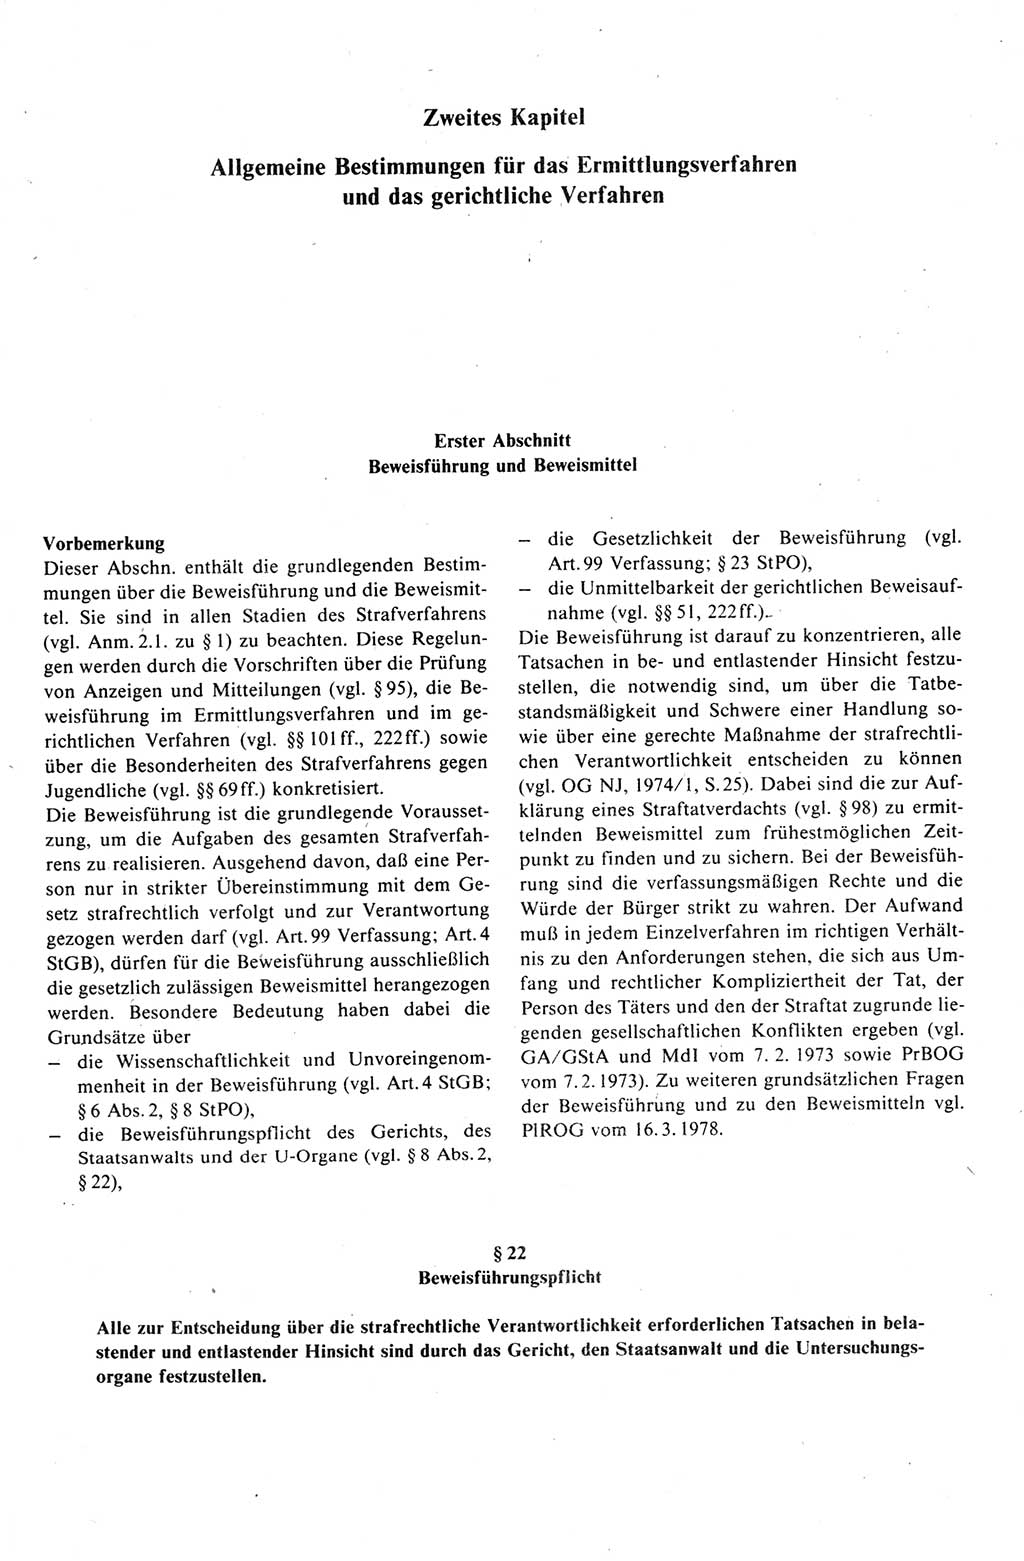 Strafprozeßrecht der DDR (Deutsche Demokratische Republik), Kommentar zur Strafprozeßordnung (StPO) 1989, Seite 47 (Strafprozeßr. DDR Komm. StPO 1989, S. 47)